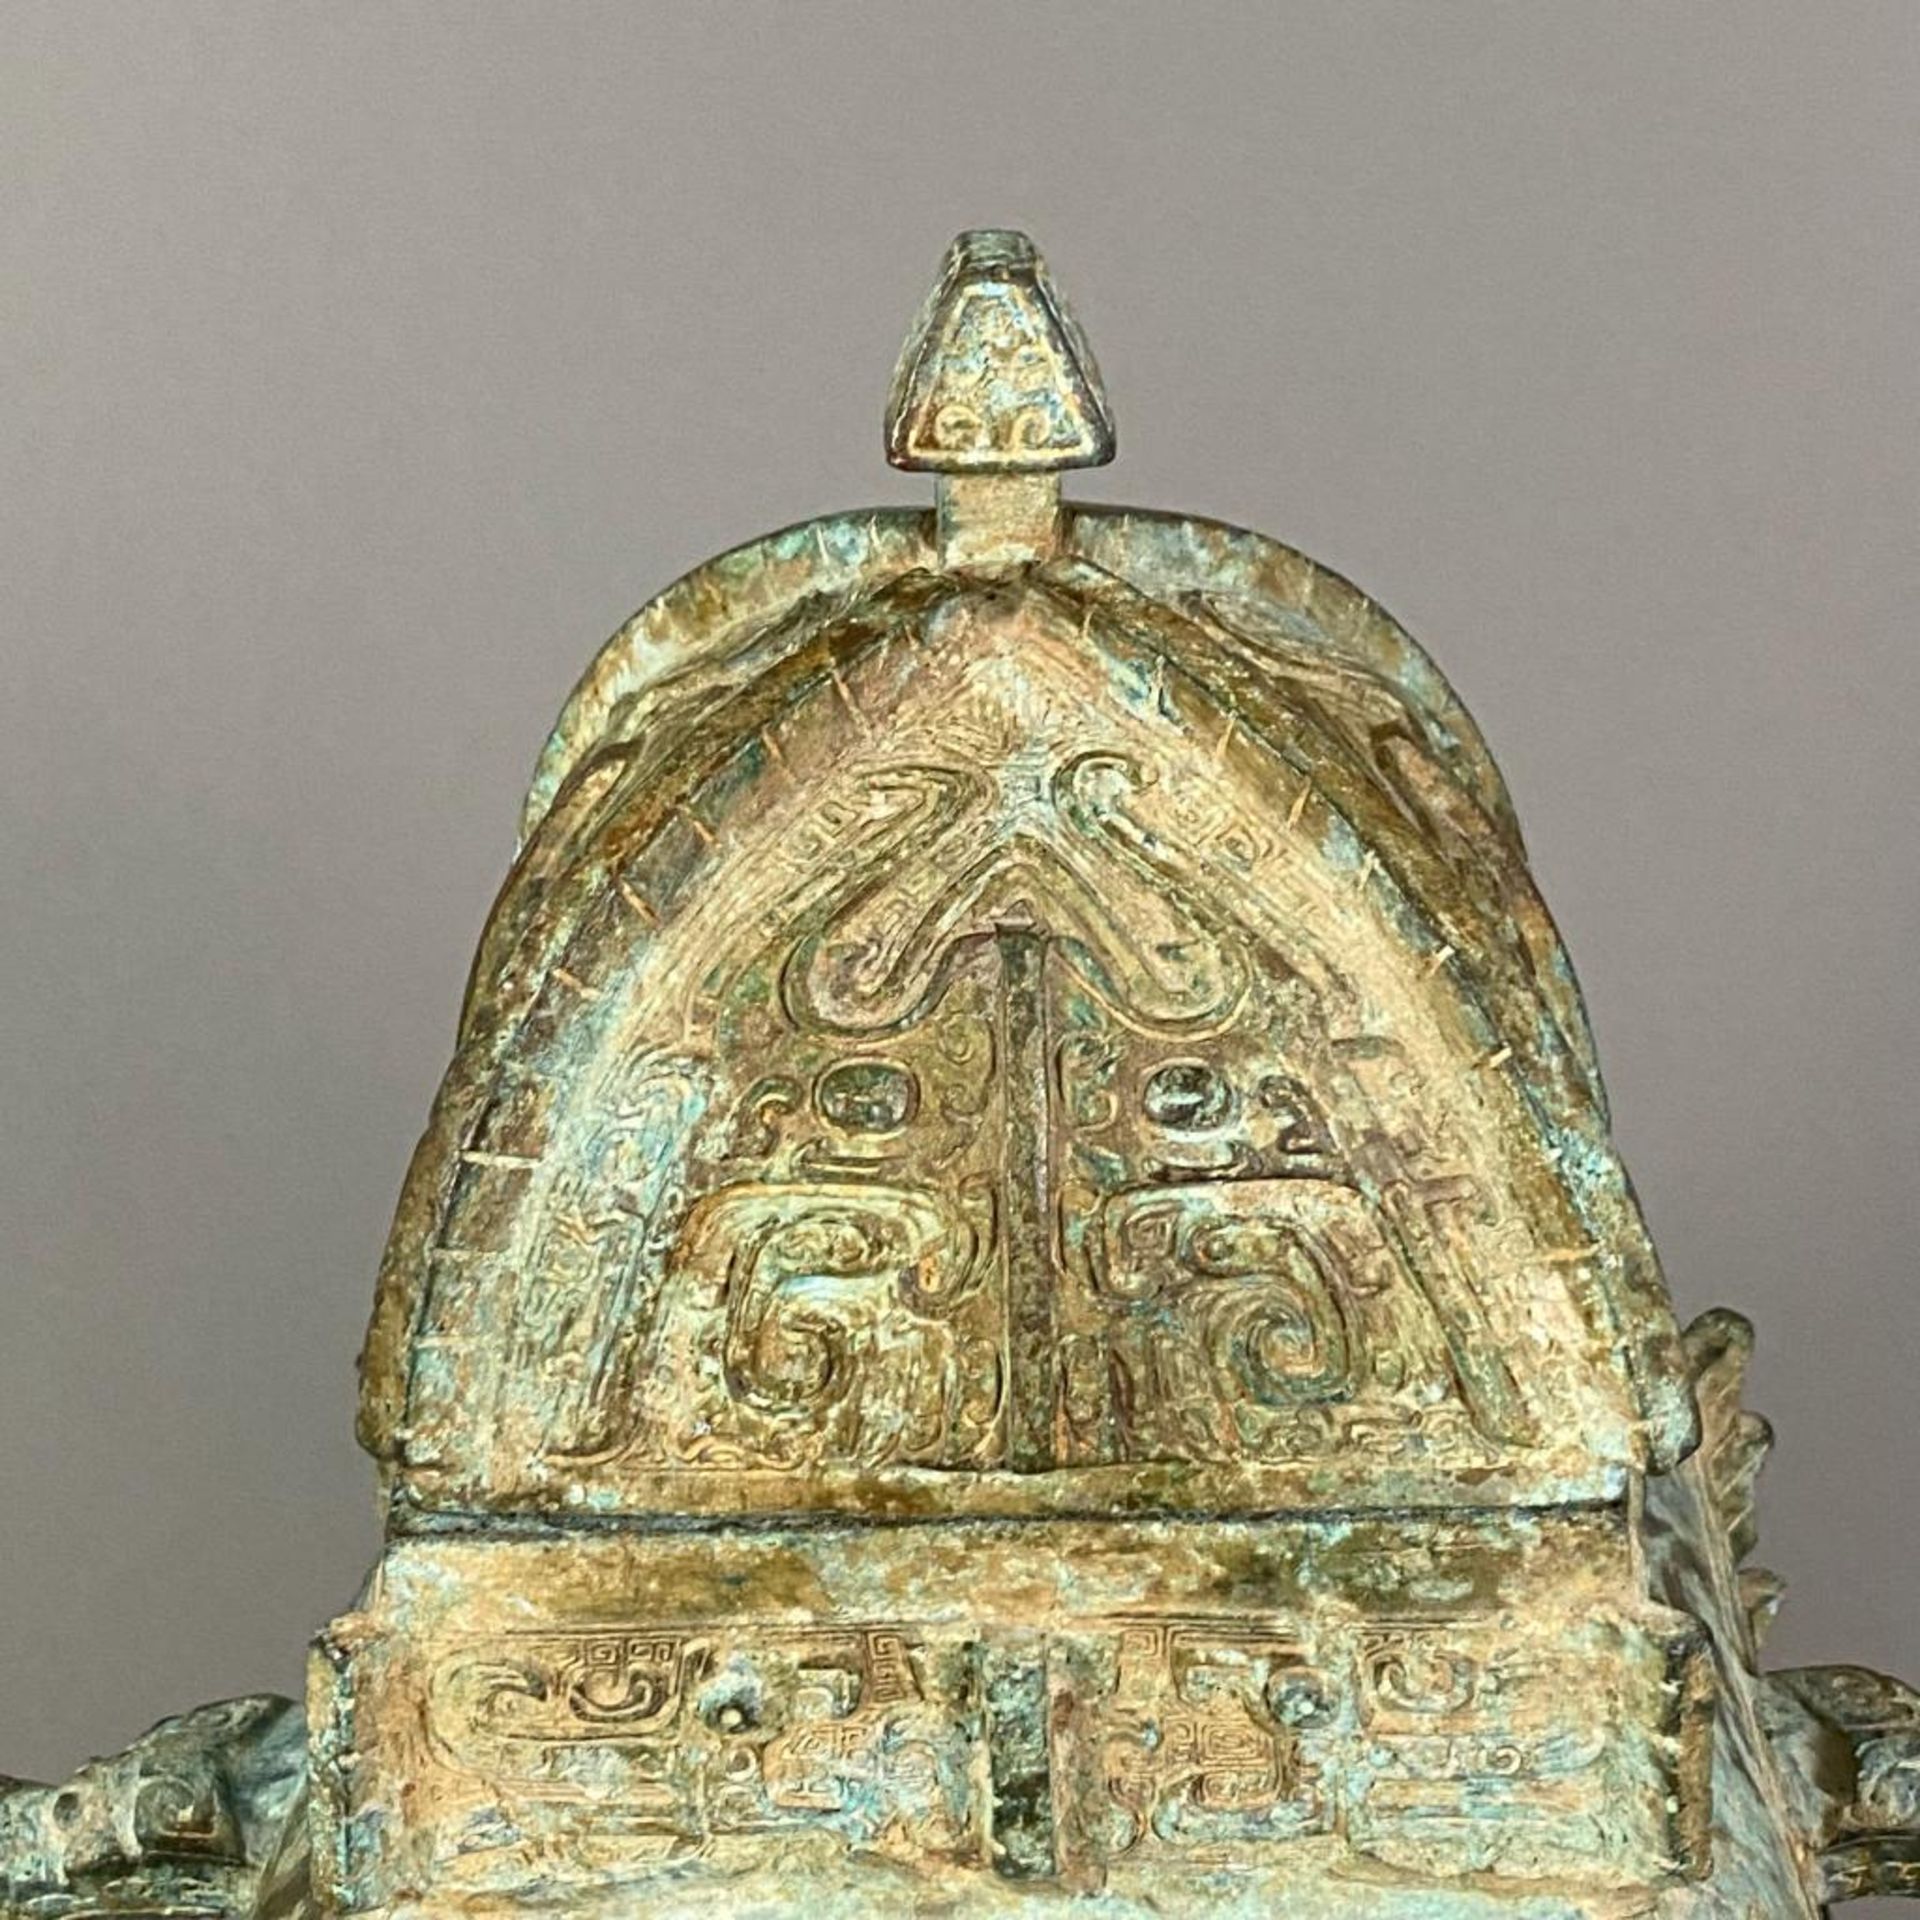 Fanghu-Vase im archaischen Stil - China, grün-braun patinierte Bronze, vierkantige gebauchte Form a - Bild 2 aus 10